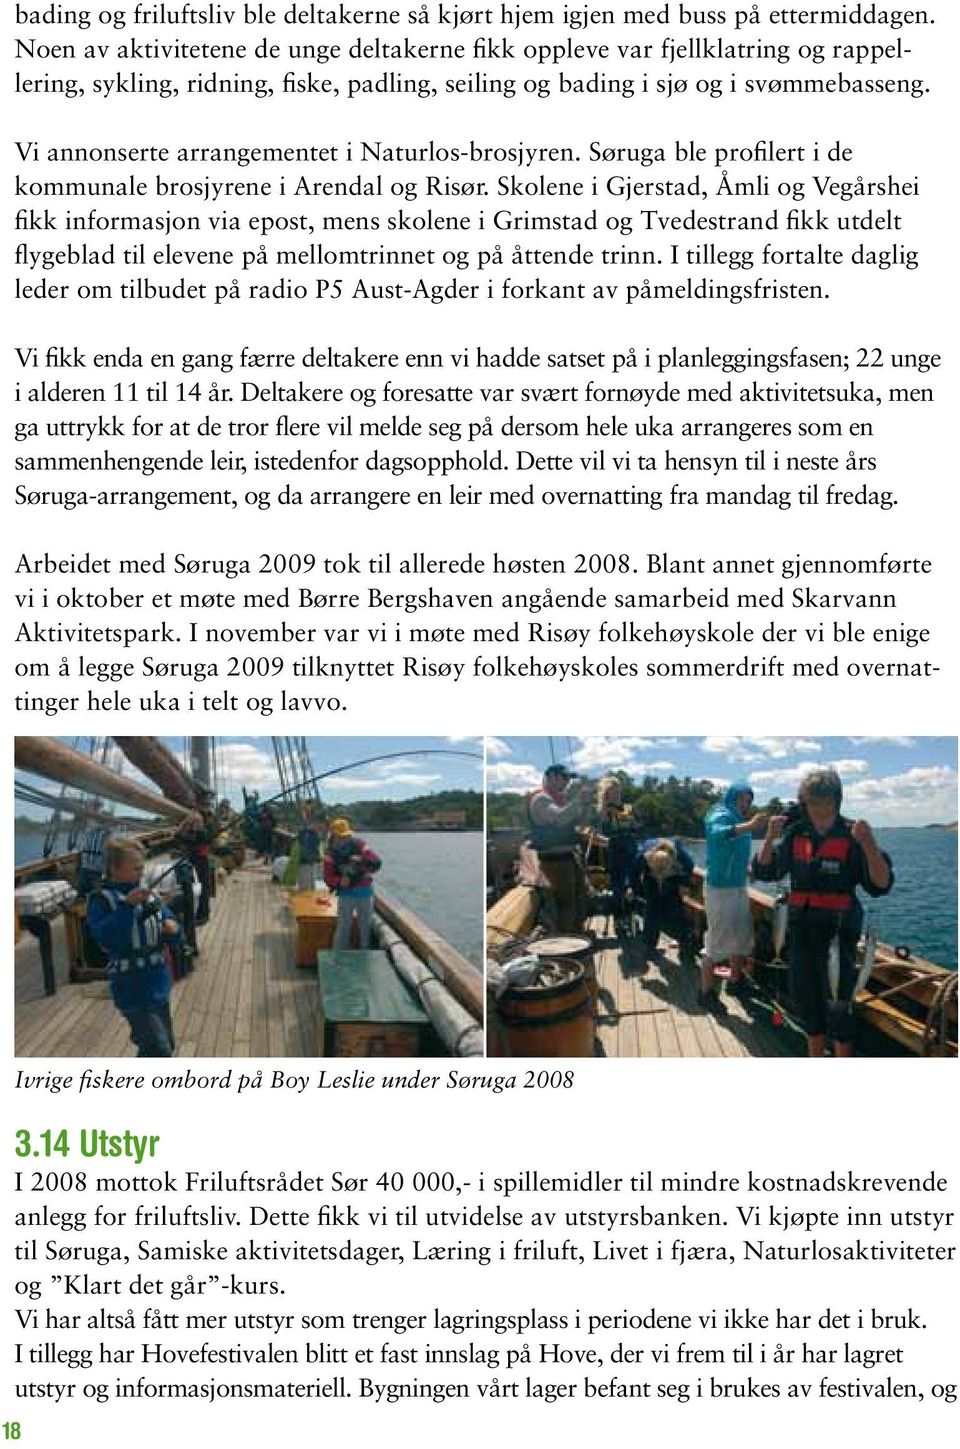 Vi annonserte arrangementet i Naturlos-brosjyren. Søruga ble profilert i de kommunale brosjyrene i Arendal og Risør.